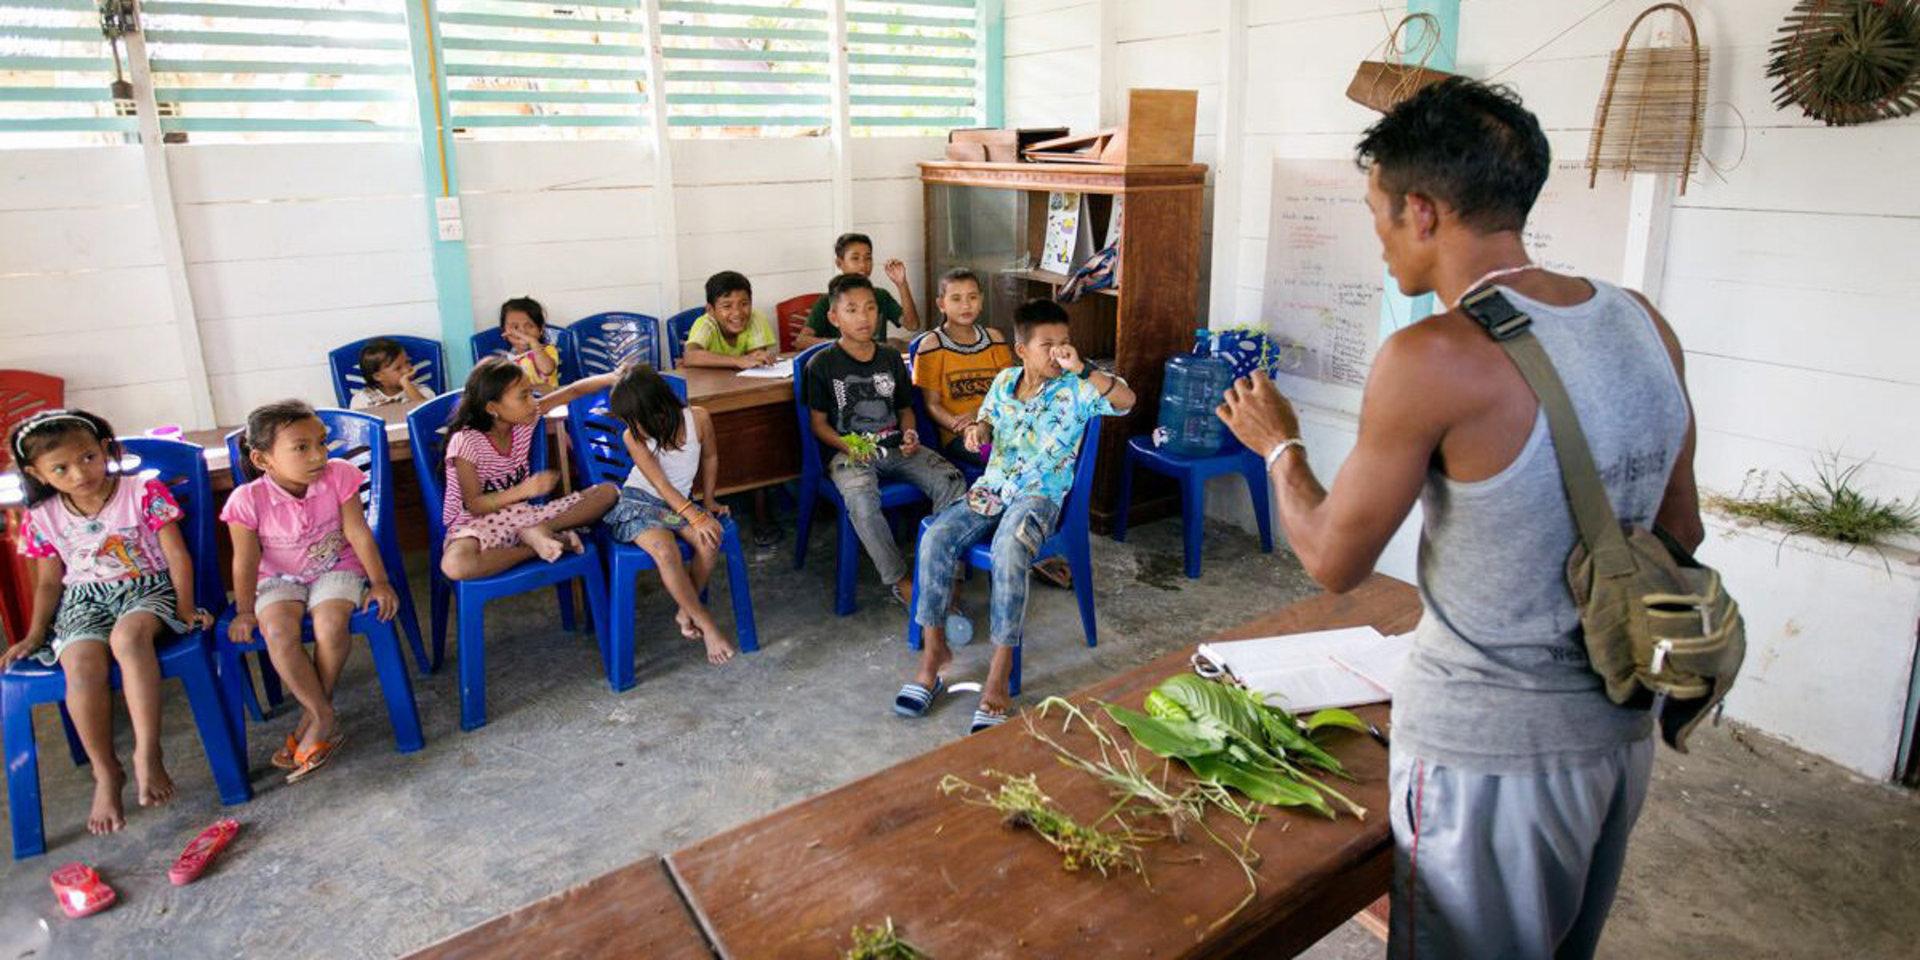  Suku Mentawai, en ideell organisation på den indonesiska ön Siberut, arbetar för att lära barn inom folkgruppen mentawai om sitt ursprung.